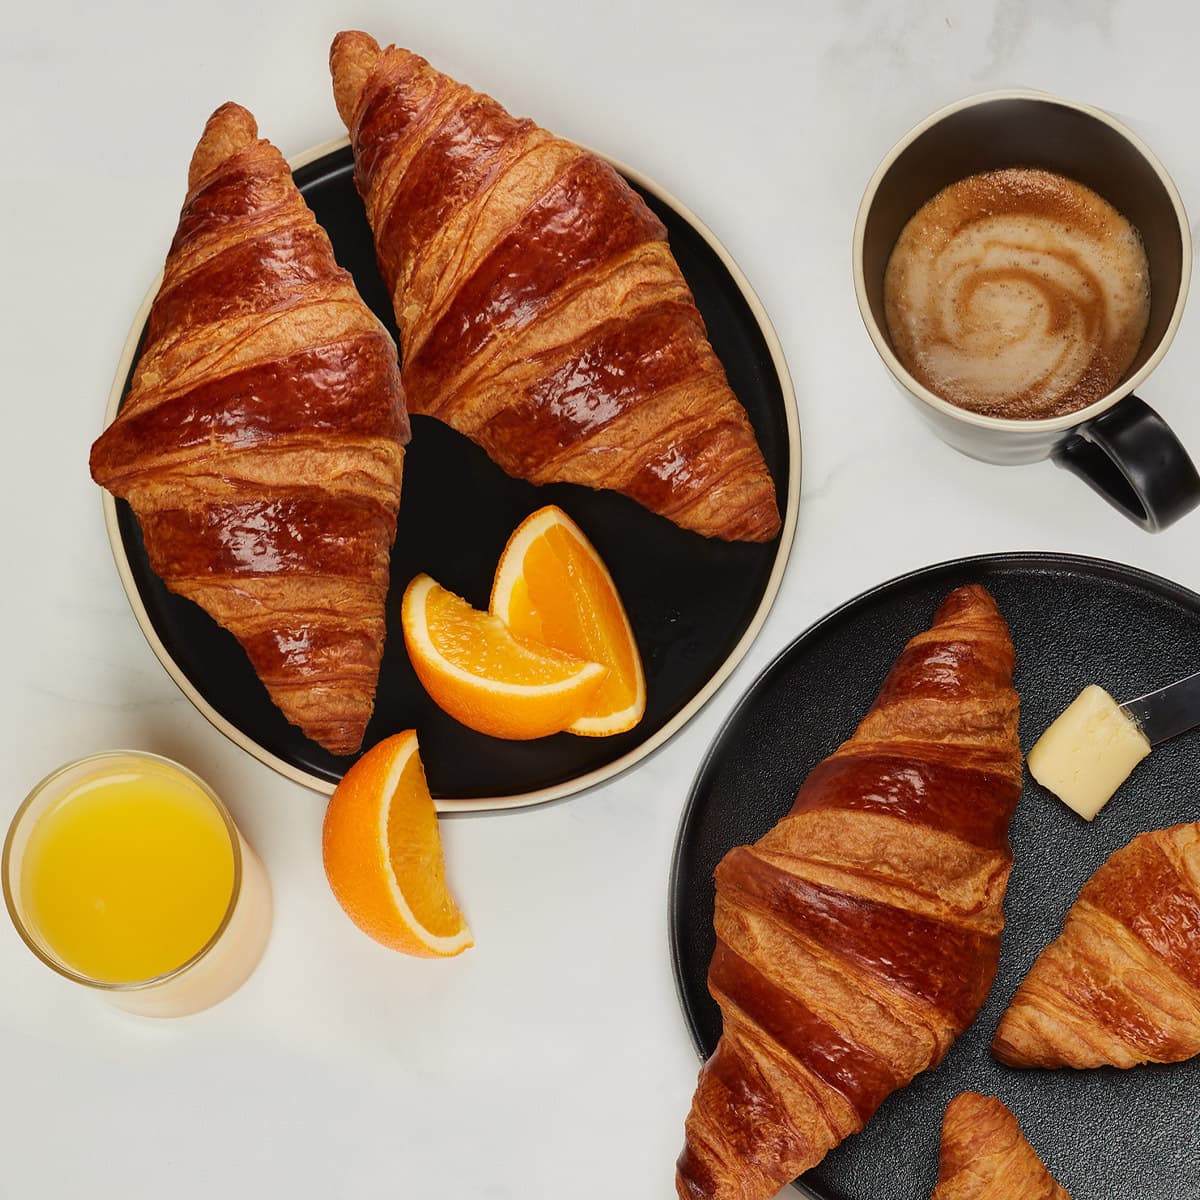 trois croissants parfaits tout beurre avec un jus d'orange et un café